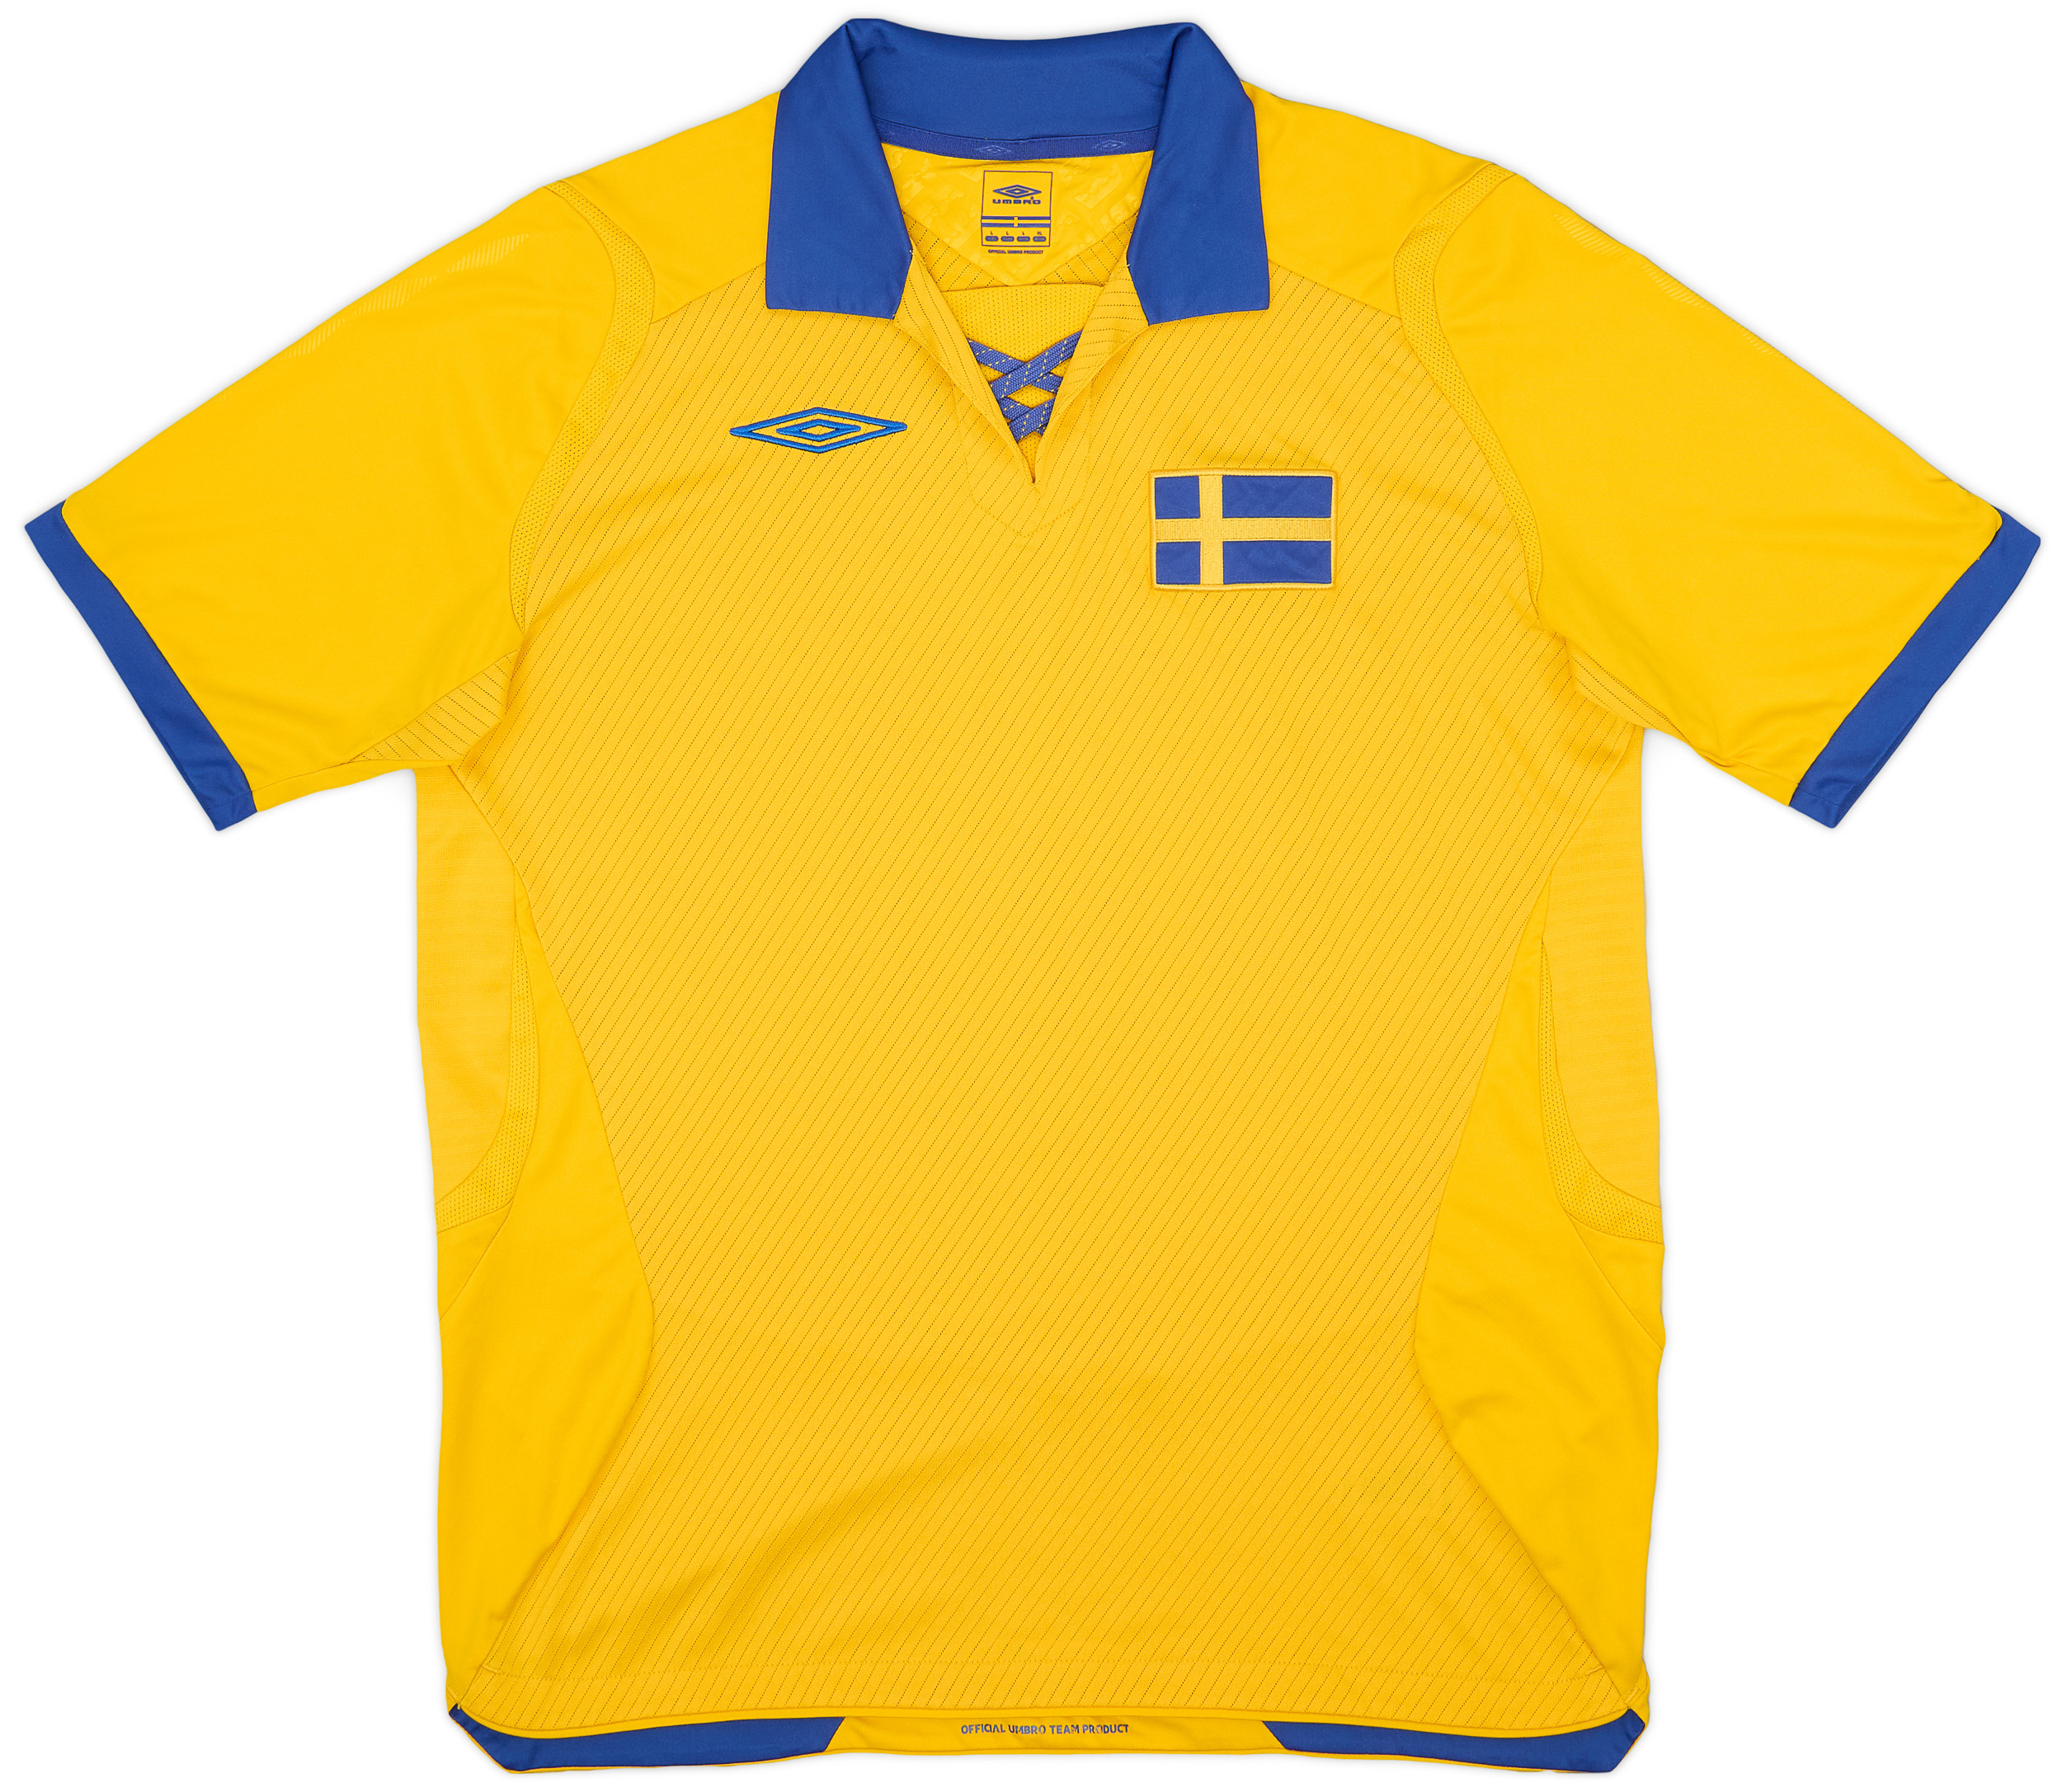 2008-09 Sweden Home Shirt - 9/10 - ()